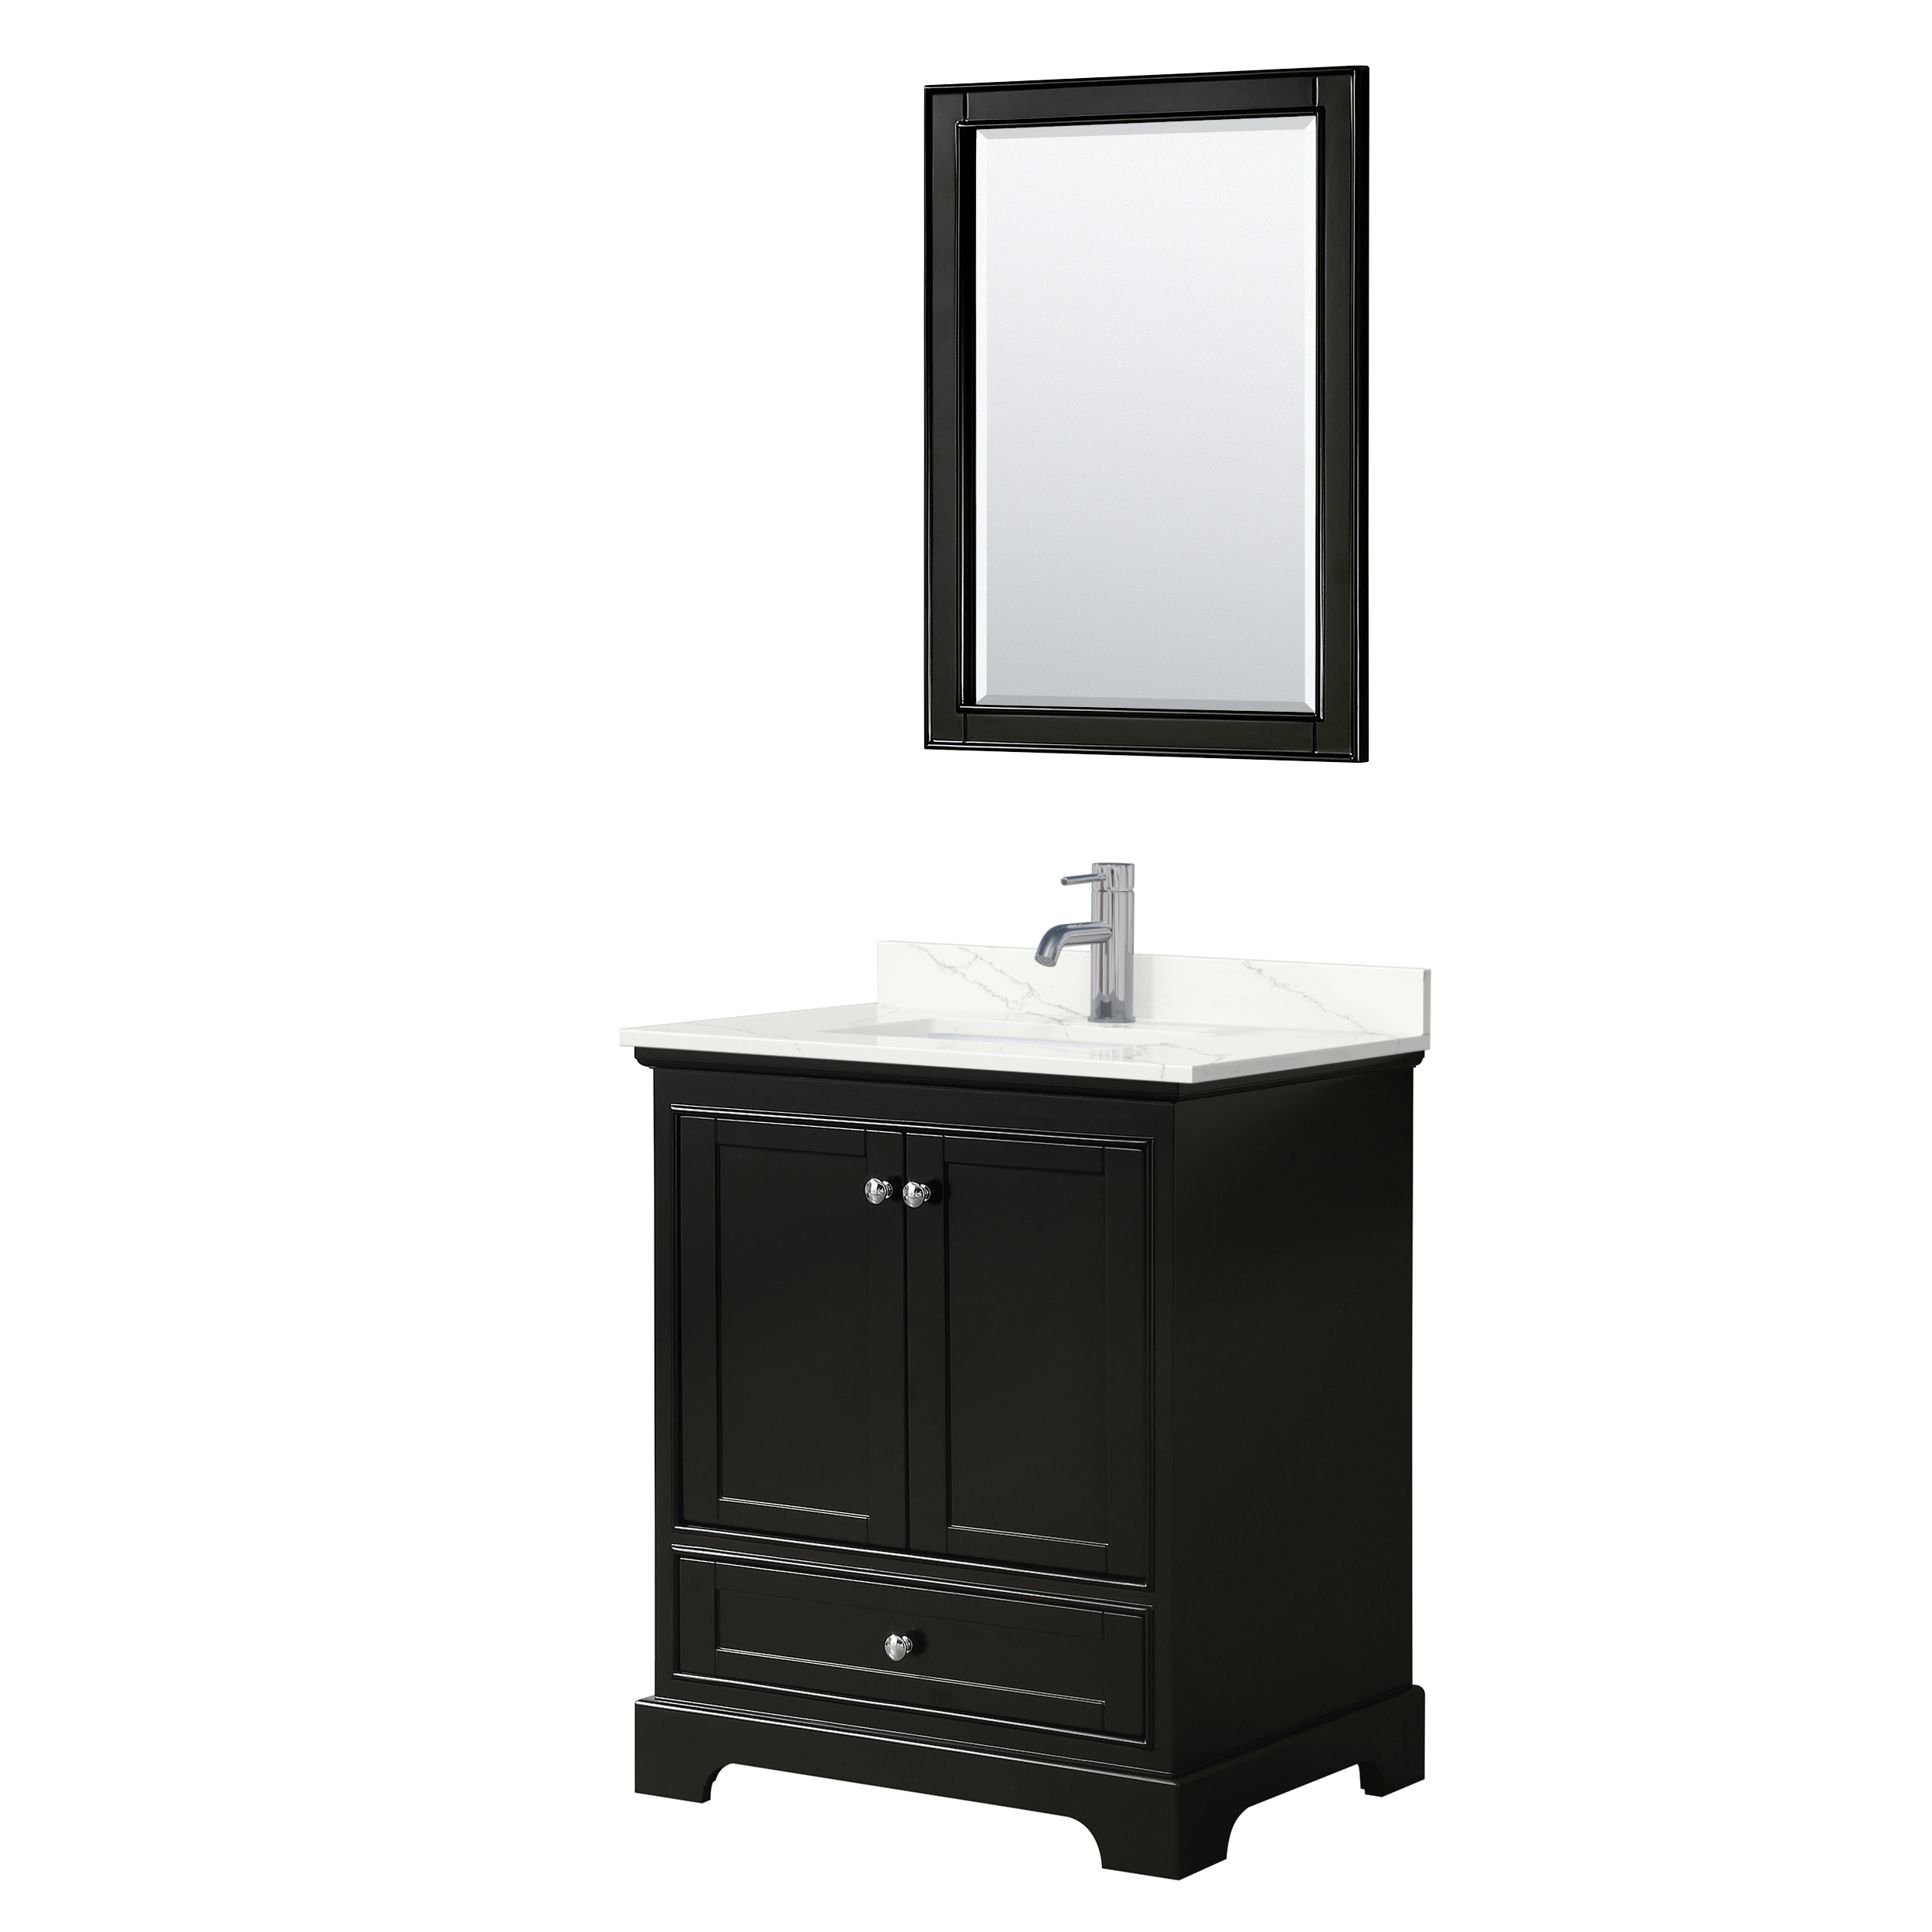 Deborah 30" Single Bathroom Vanity in Dark Espresso WC-2020-30-SGL-VAN-DES